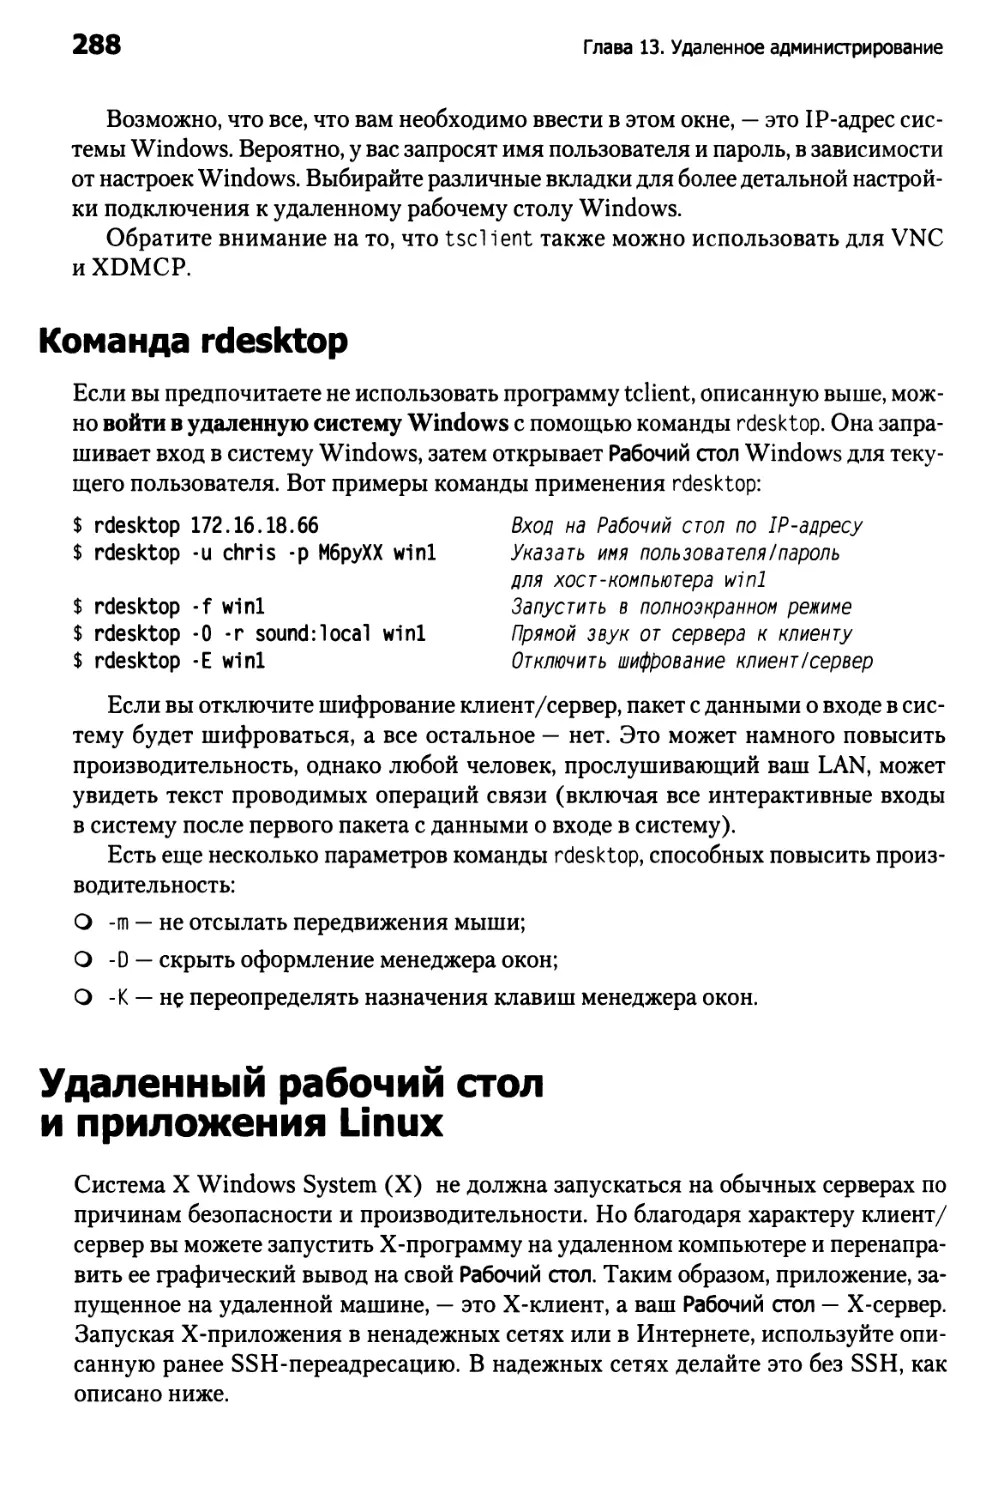 Команда rdesktop
Удаленный рабочий стол и приложения Linux